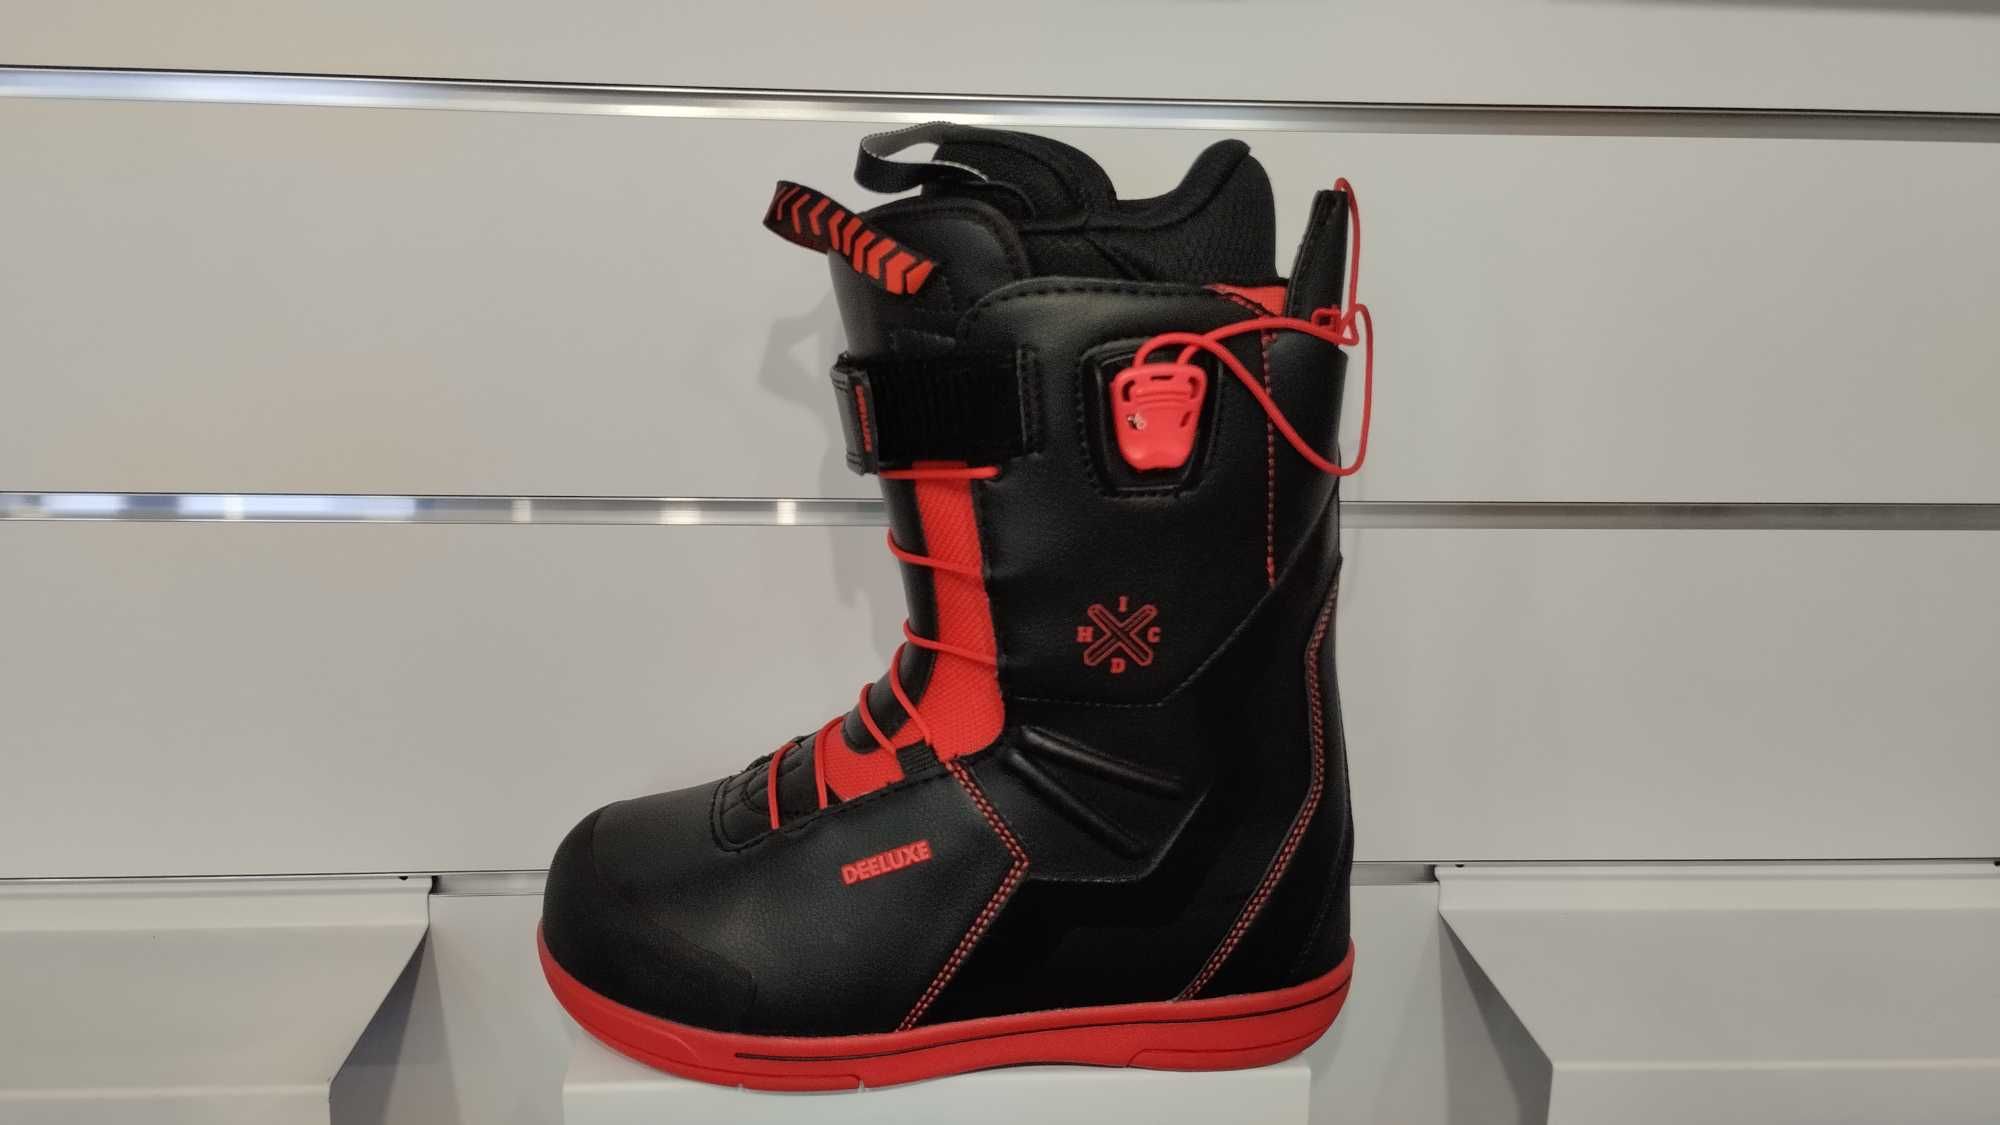 Nowe buty snowboardowe Deeluxe ID x HC, r.40 (255mm)